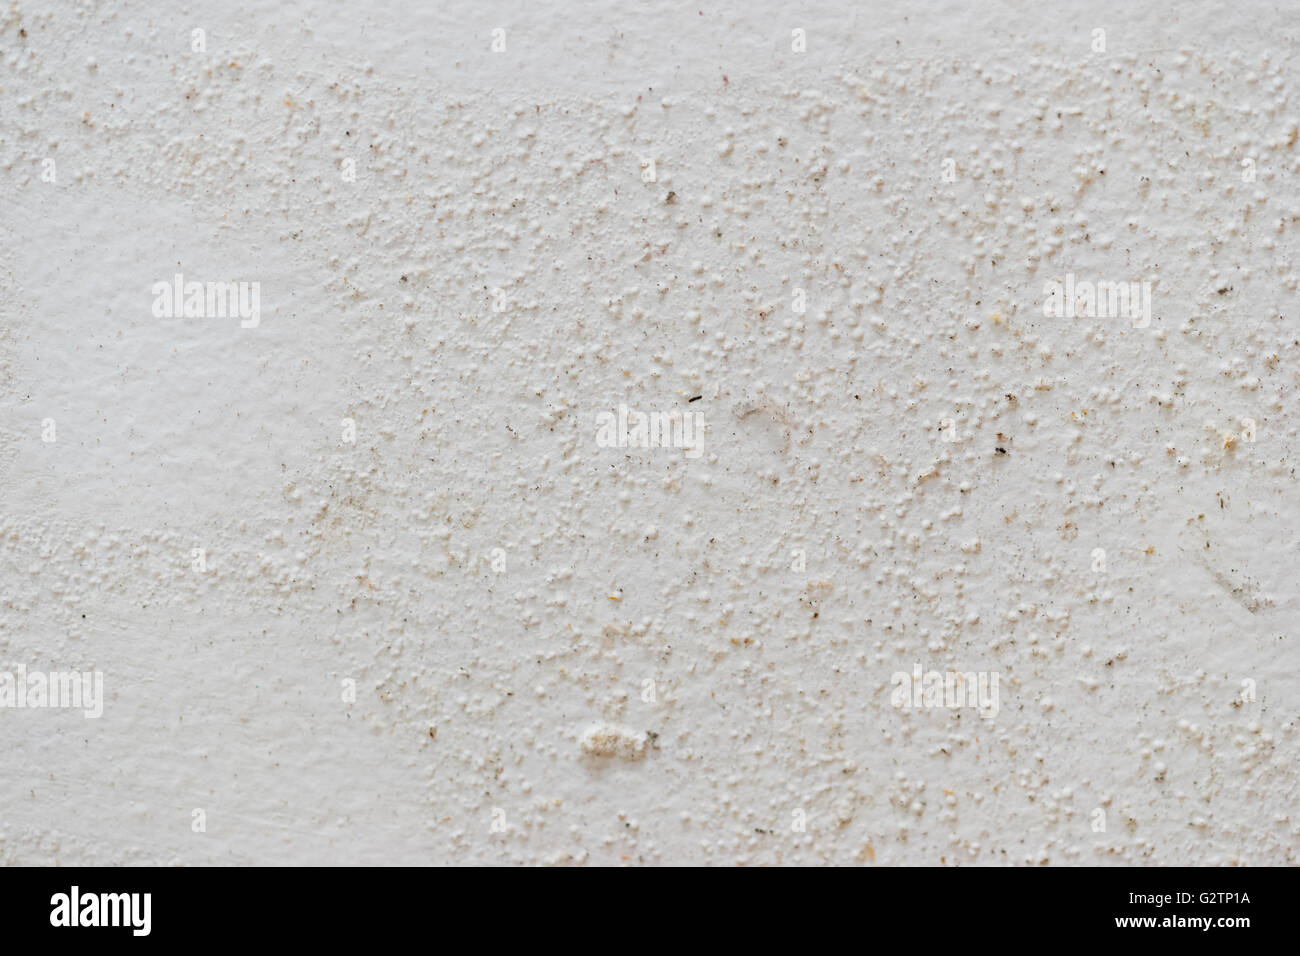 La texture du moule sur fond blanc mur amortie Banque D'Images